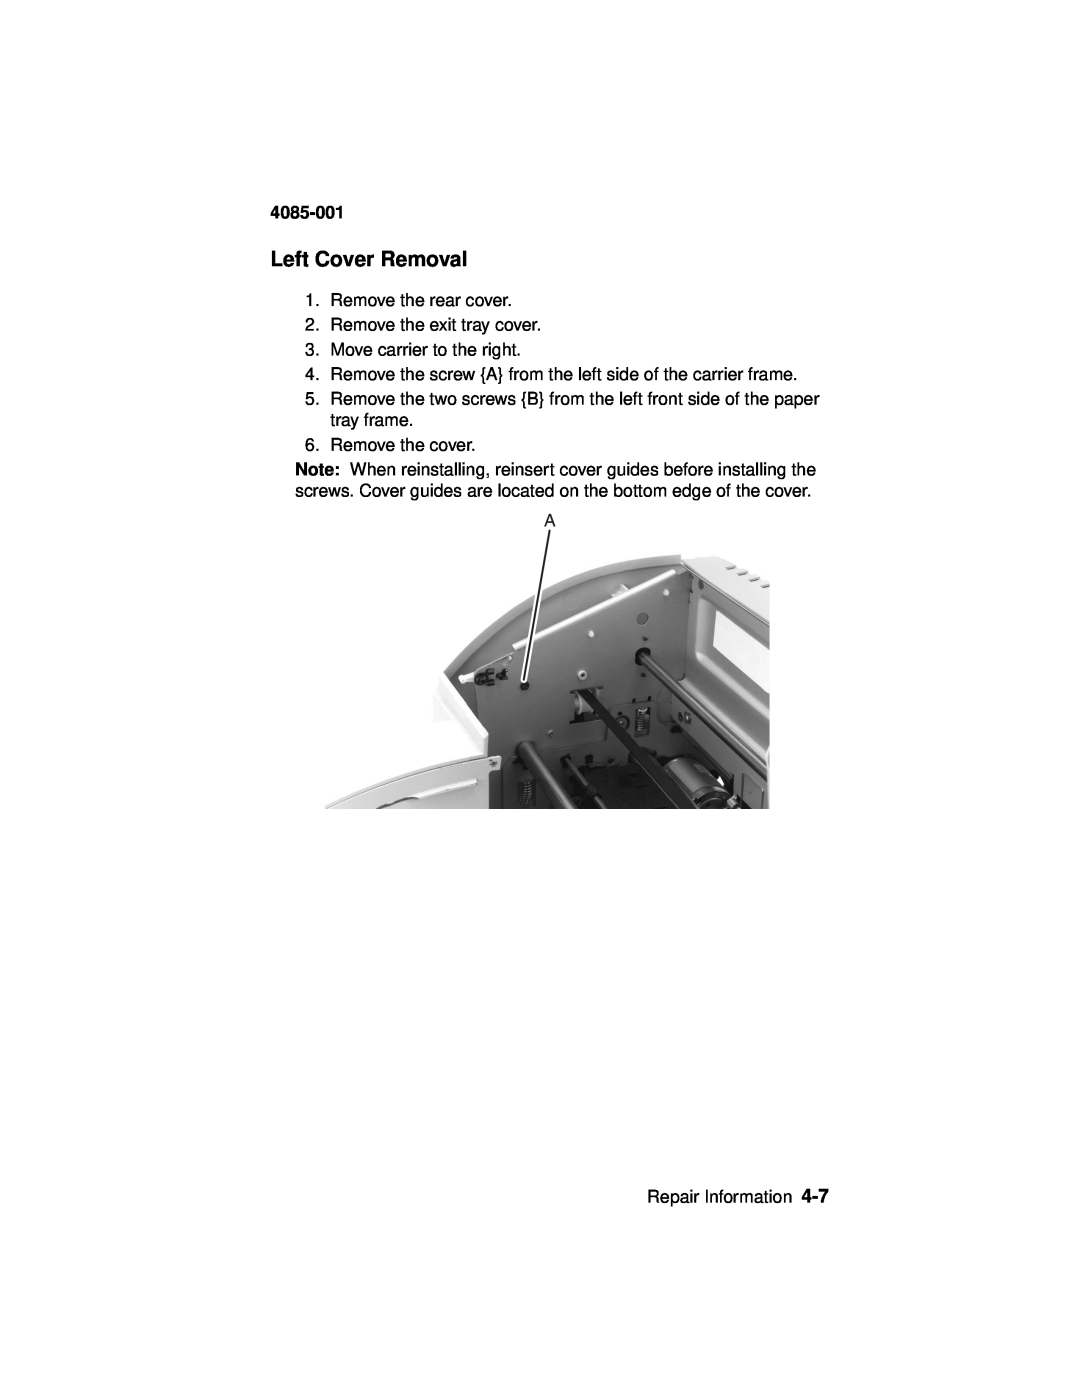 Lexmark Printer, J110 manual Left Cover Removal, 4085-001 